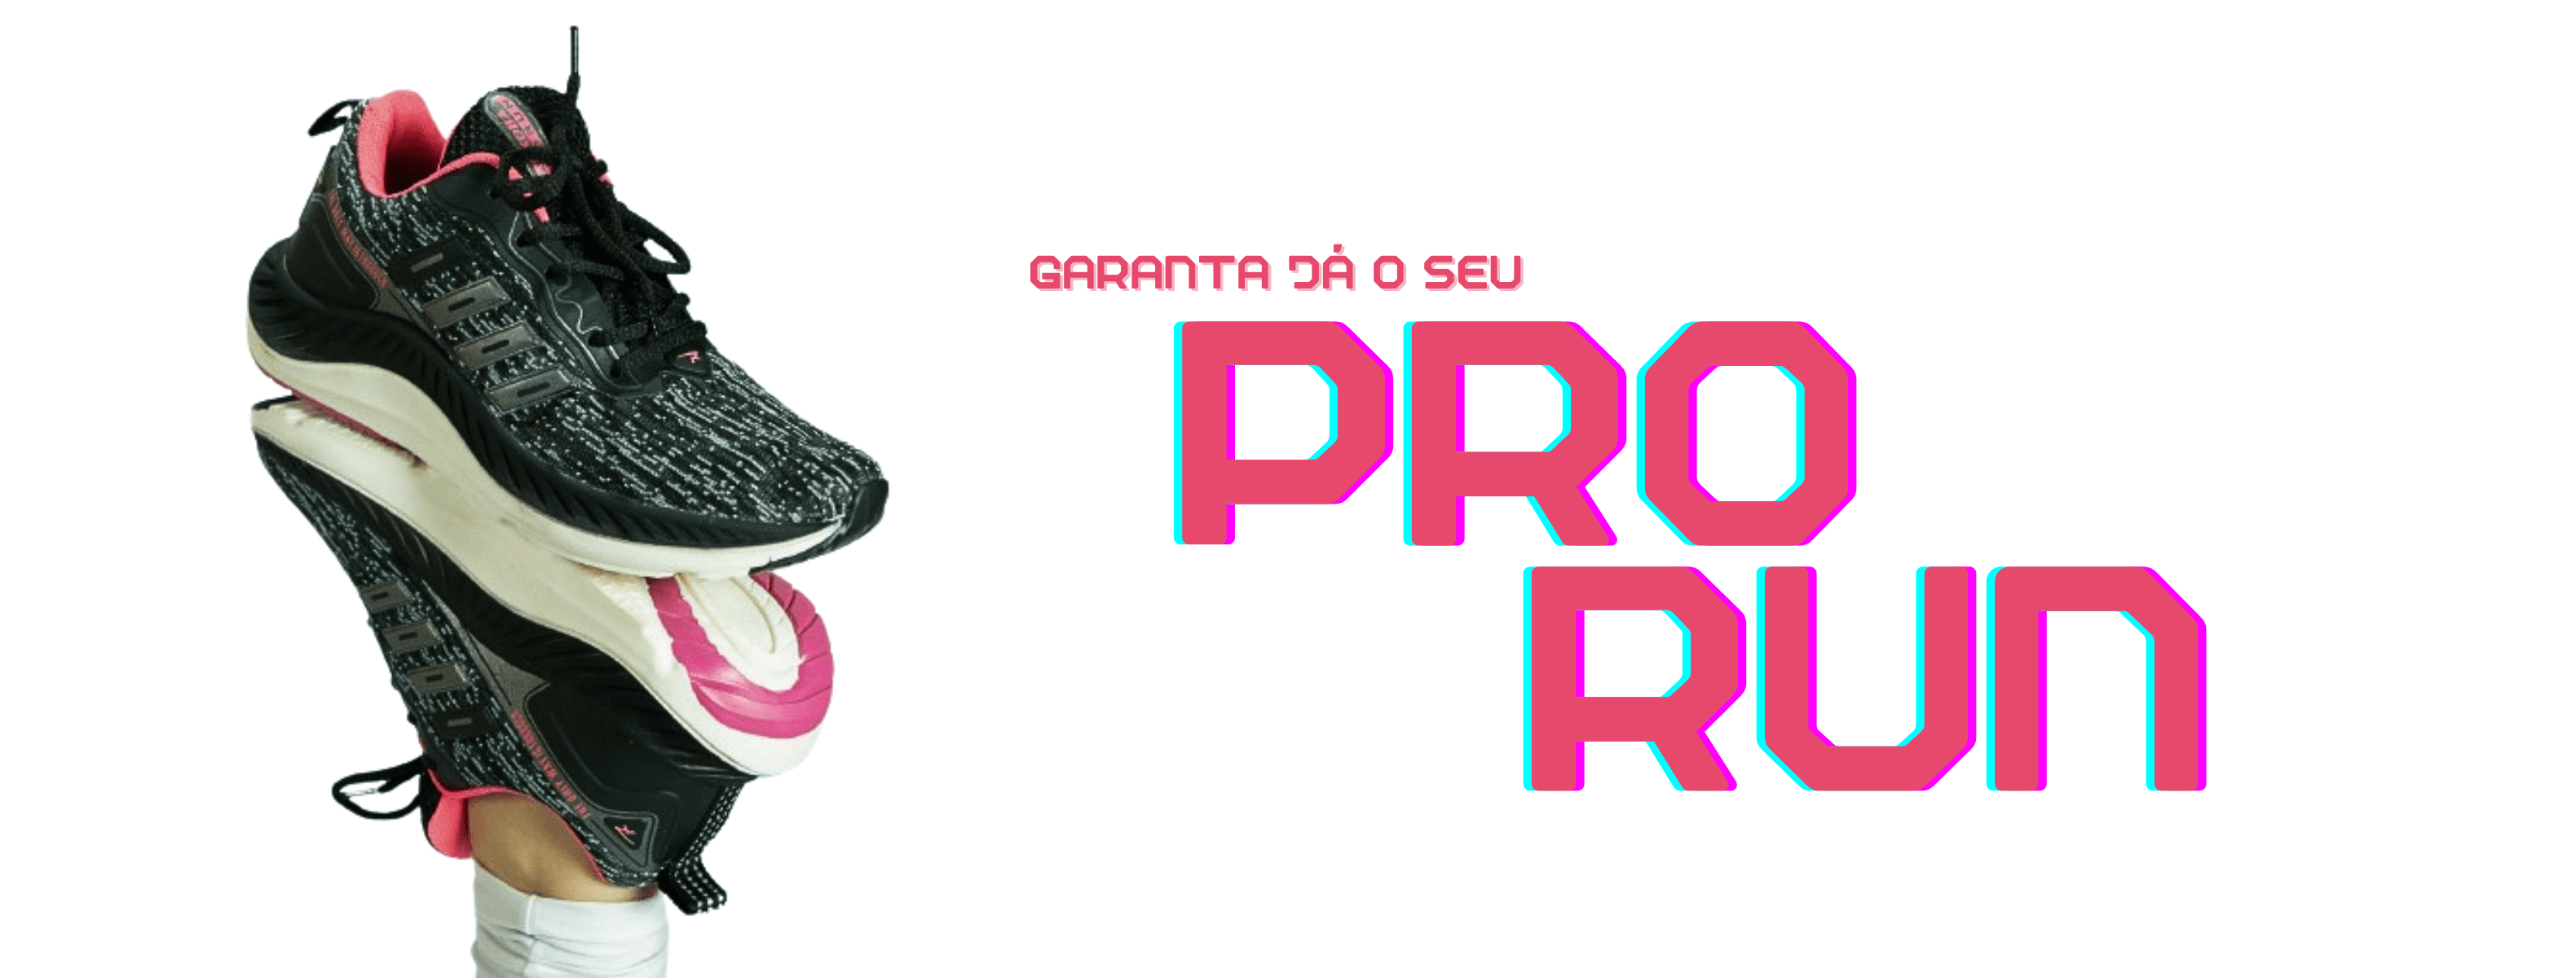 pro-run-1-1